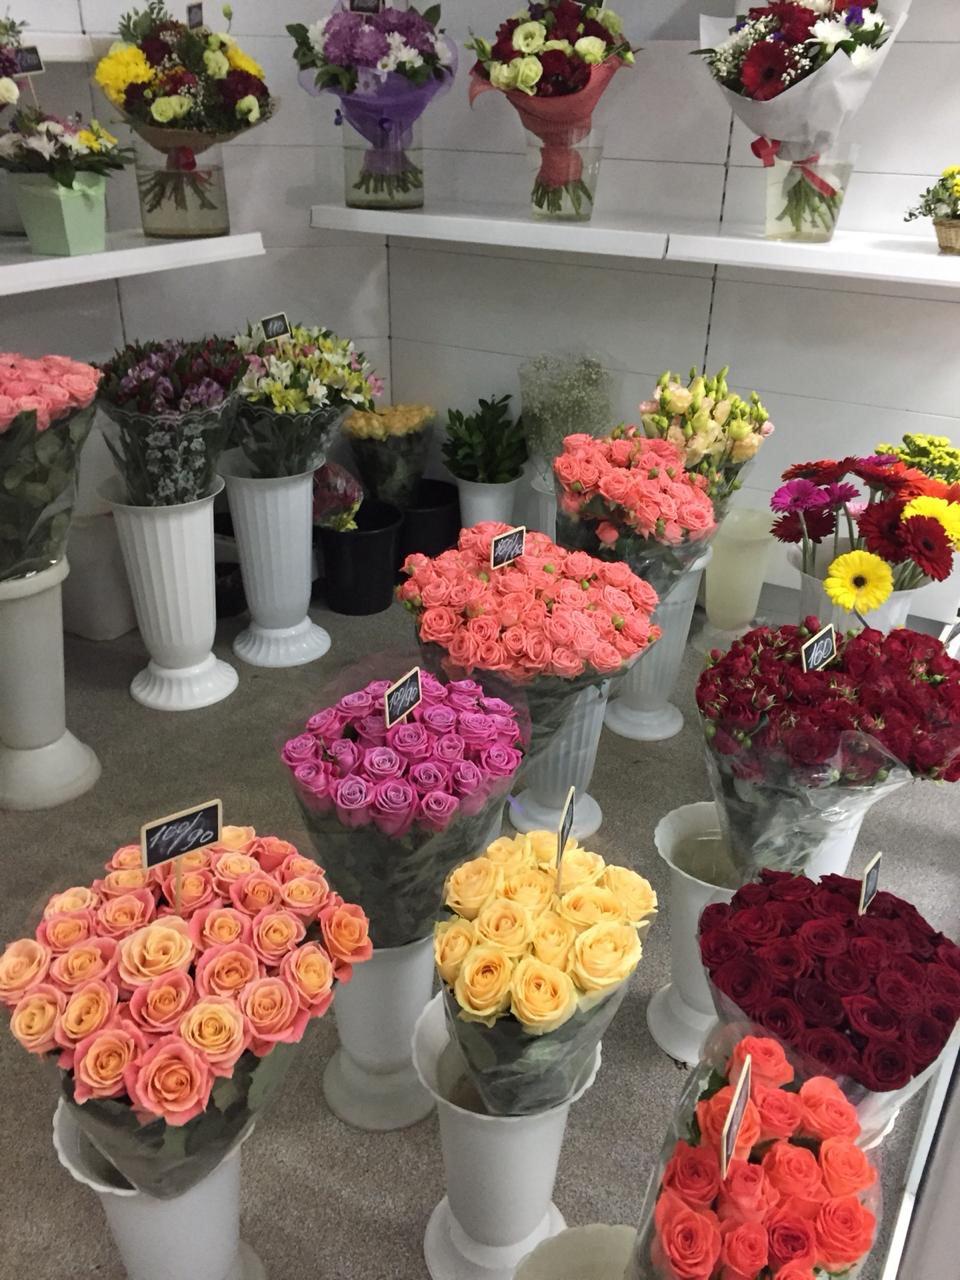 Купить цветы недорого cvbaza. Цветы в цветочном магазине. Цветы магазинные. Цветы на продажу. Оборудование для магазина цветов.